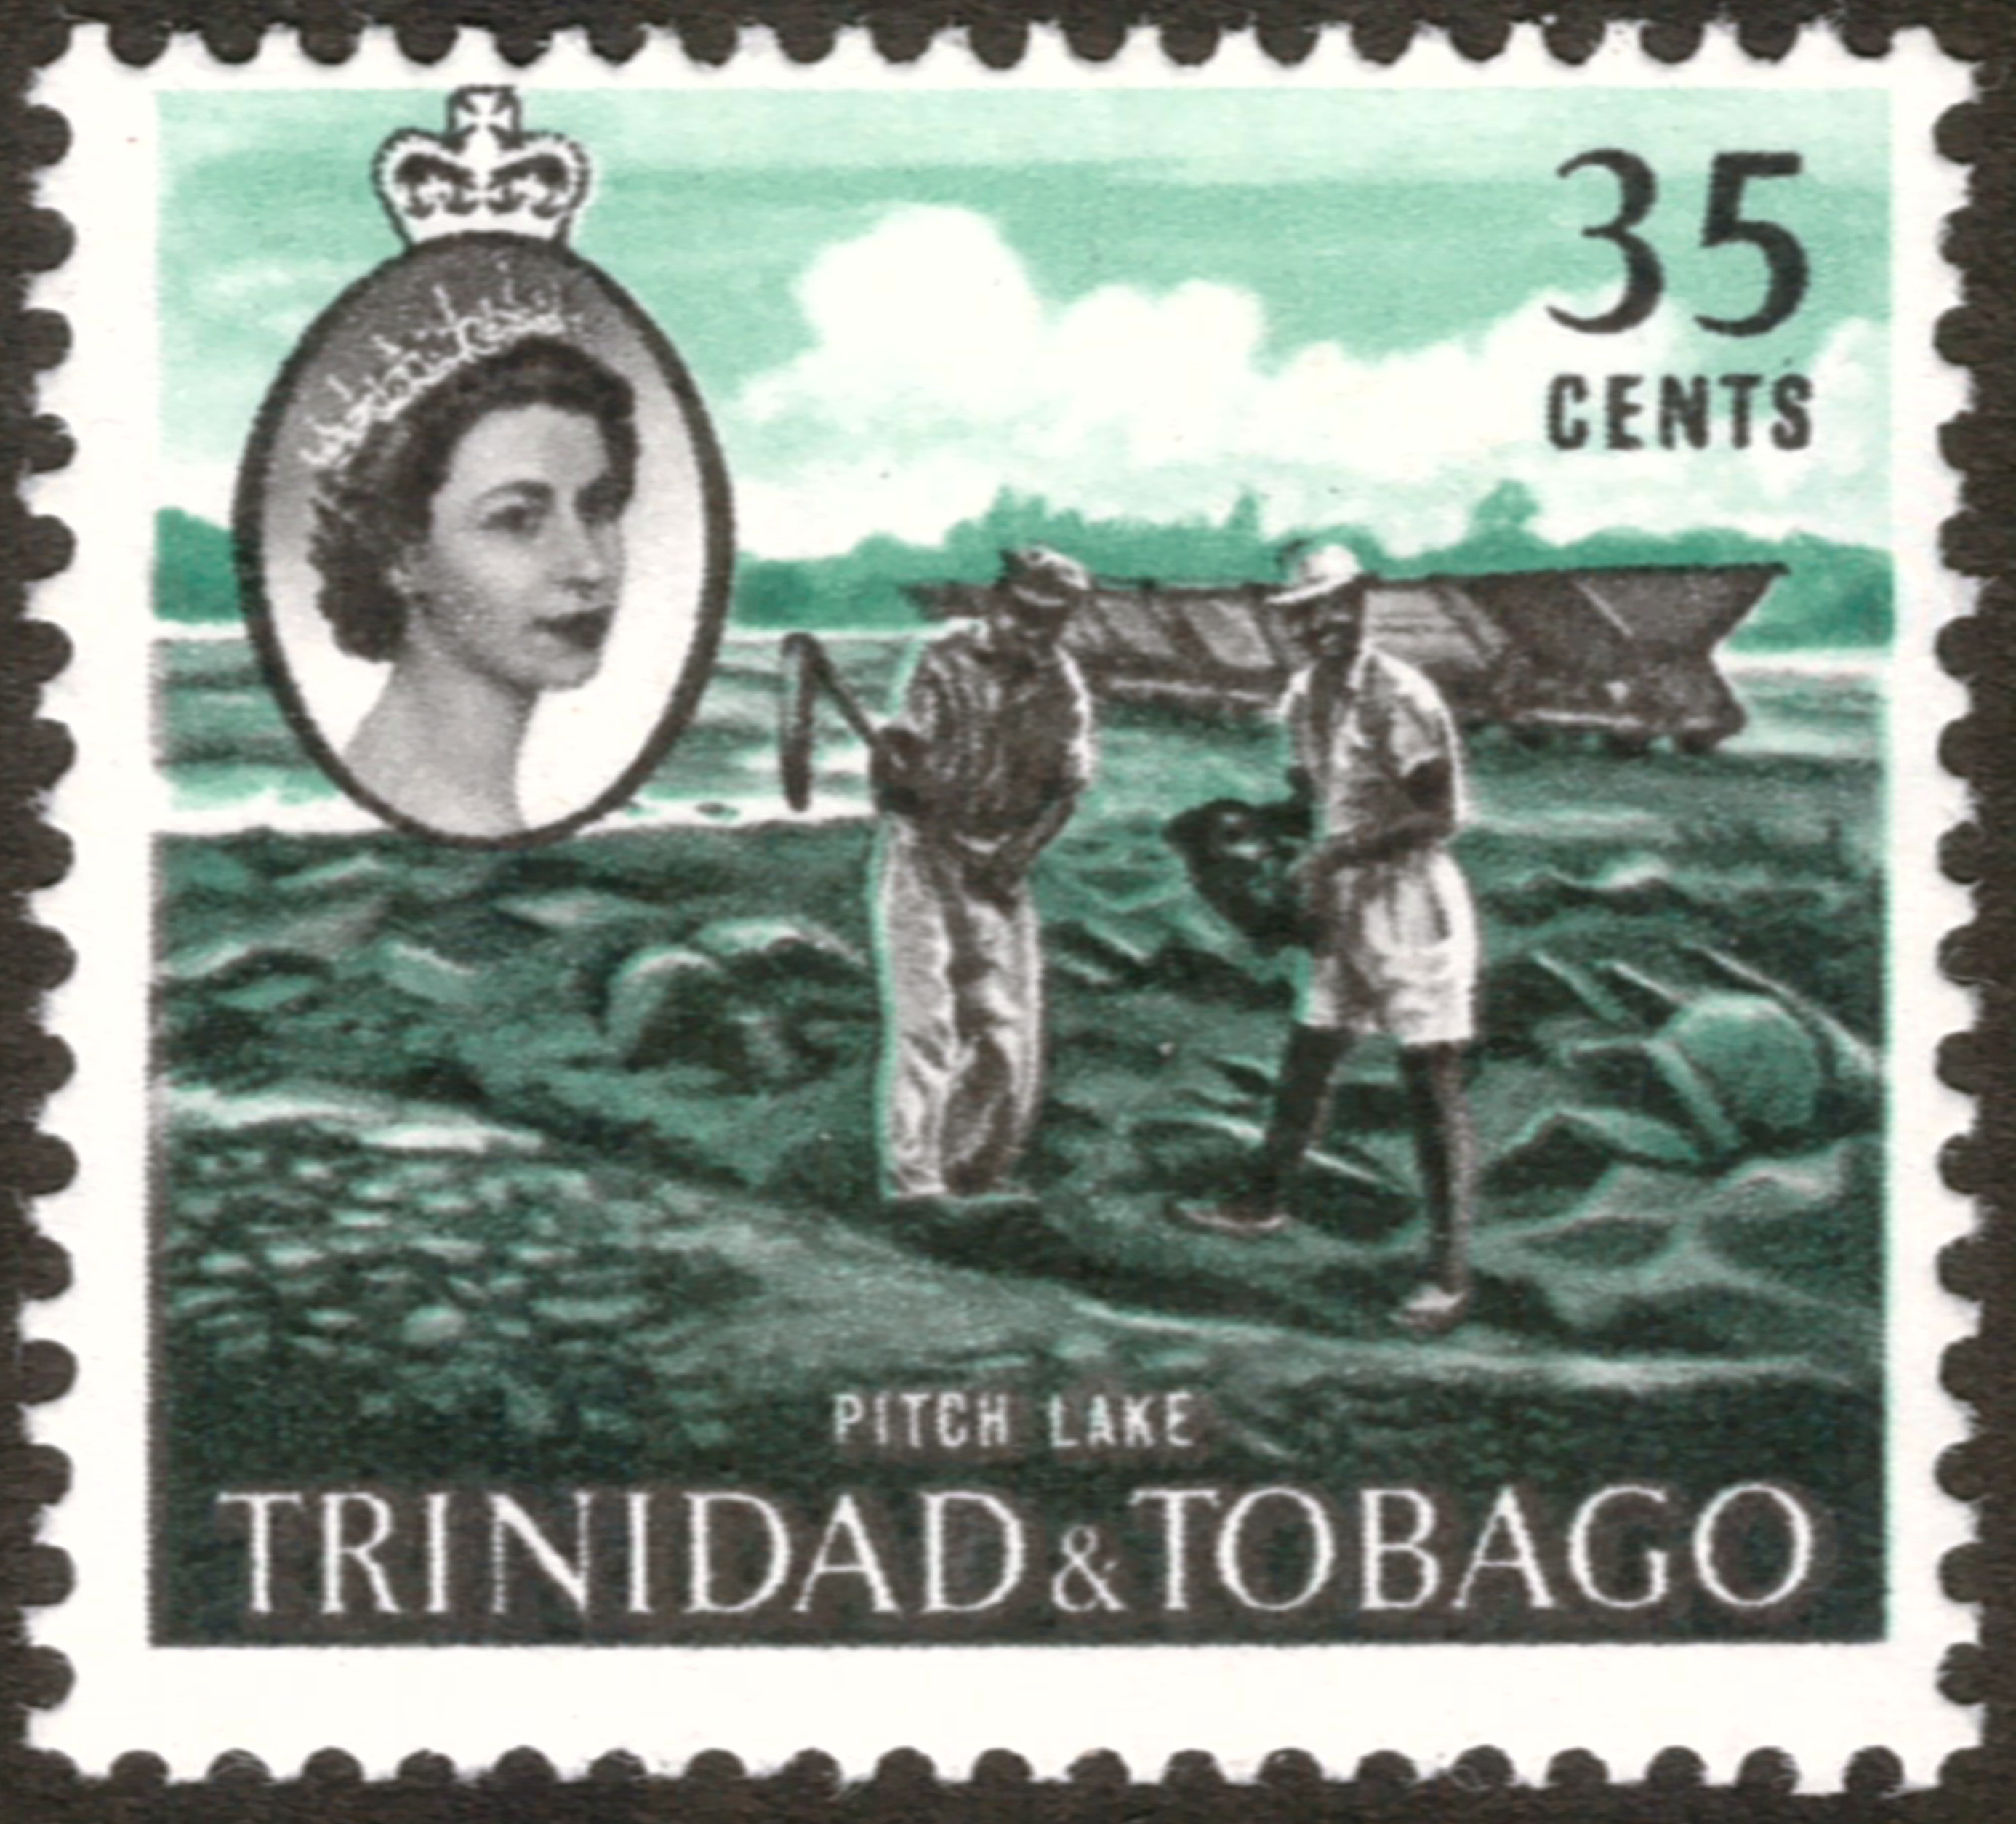 Trinidad pitch lake